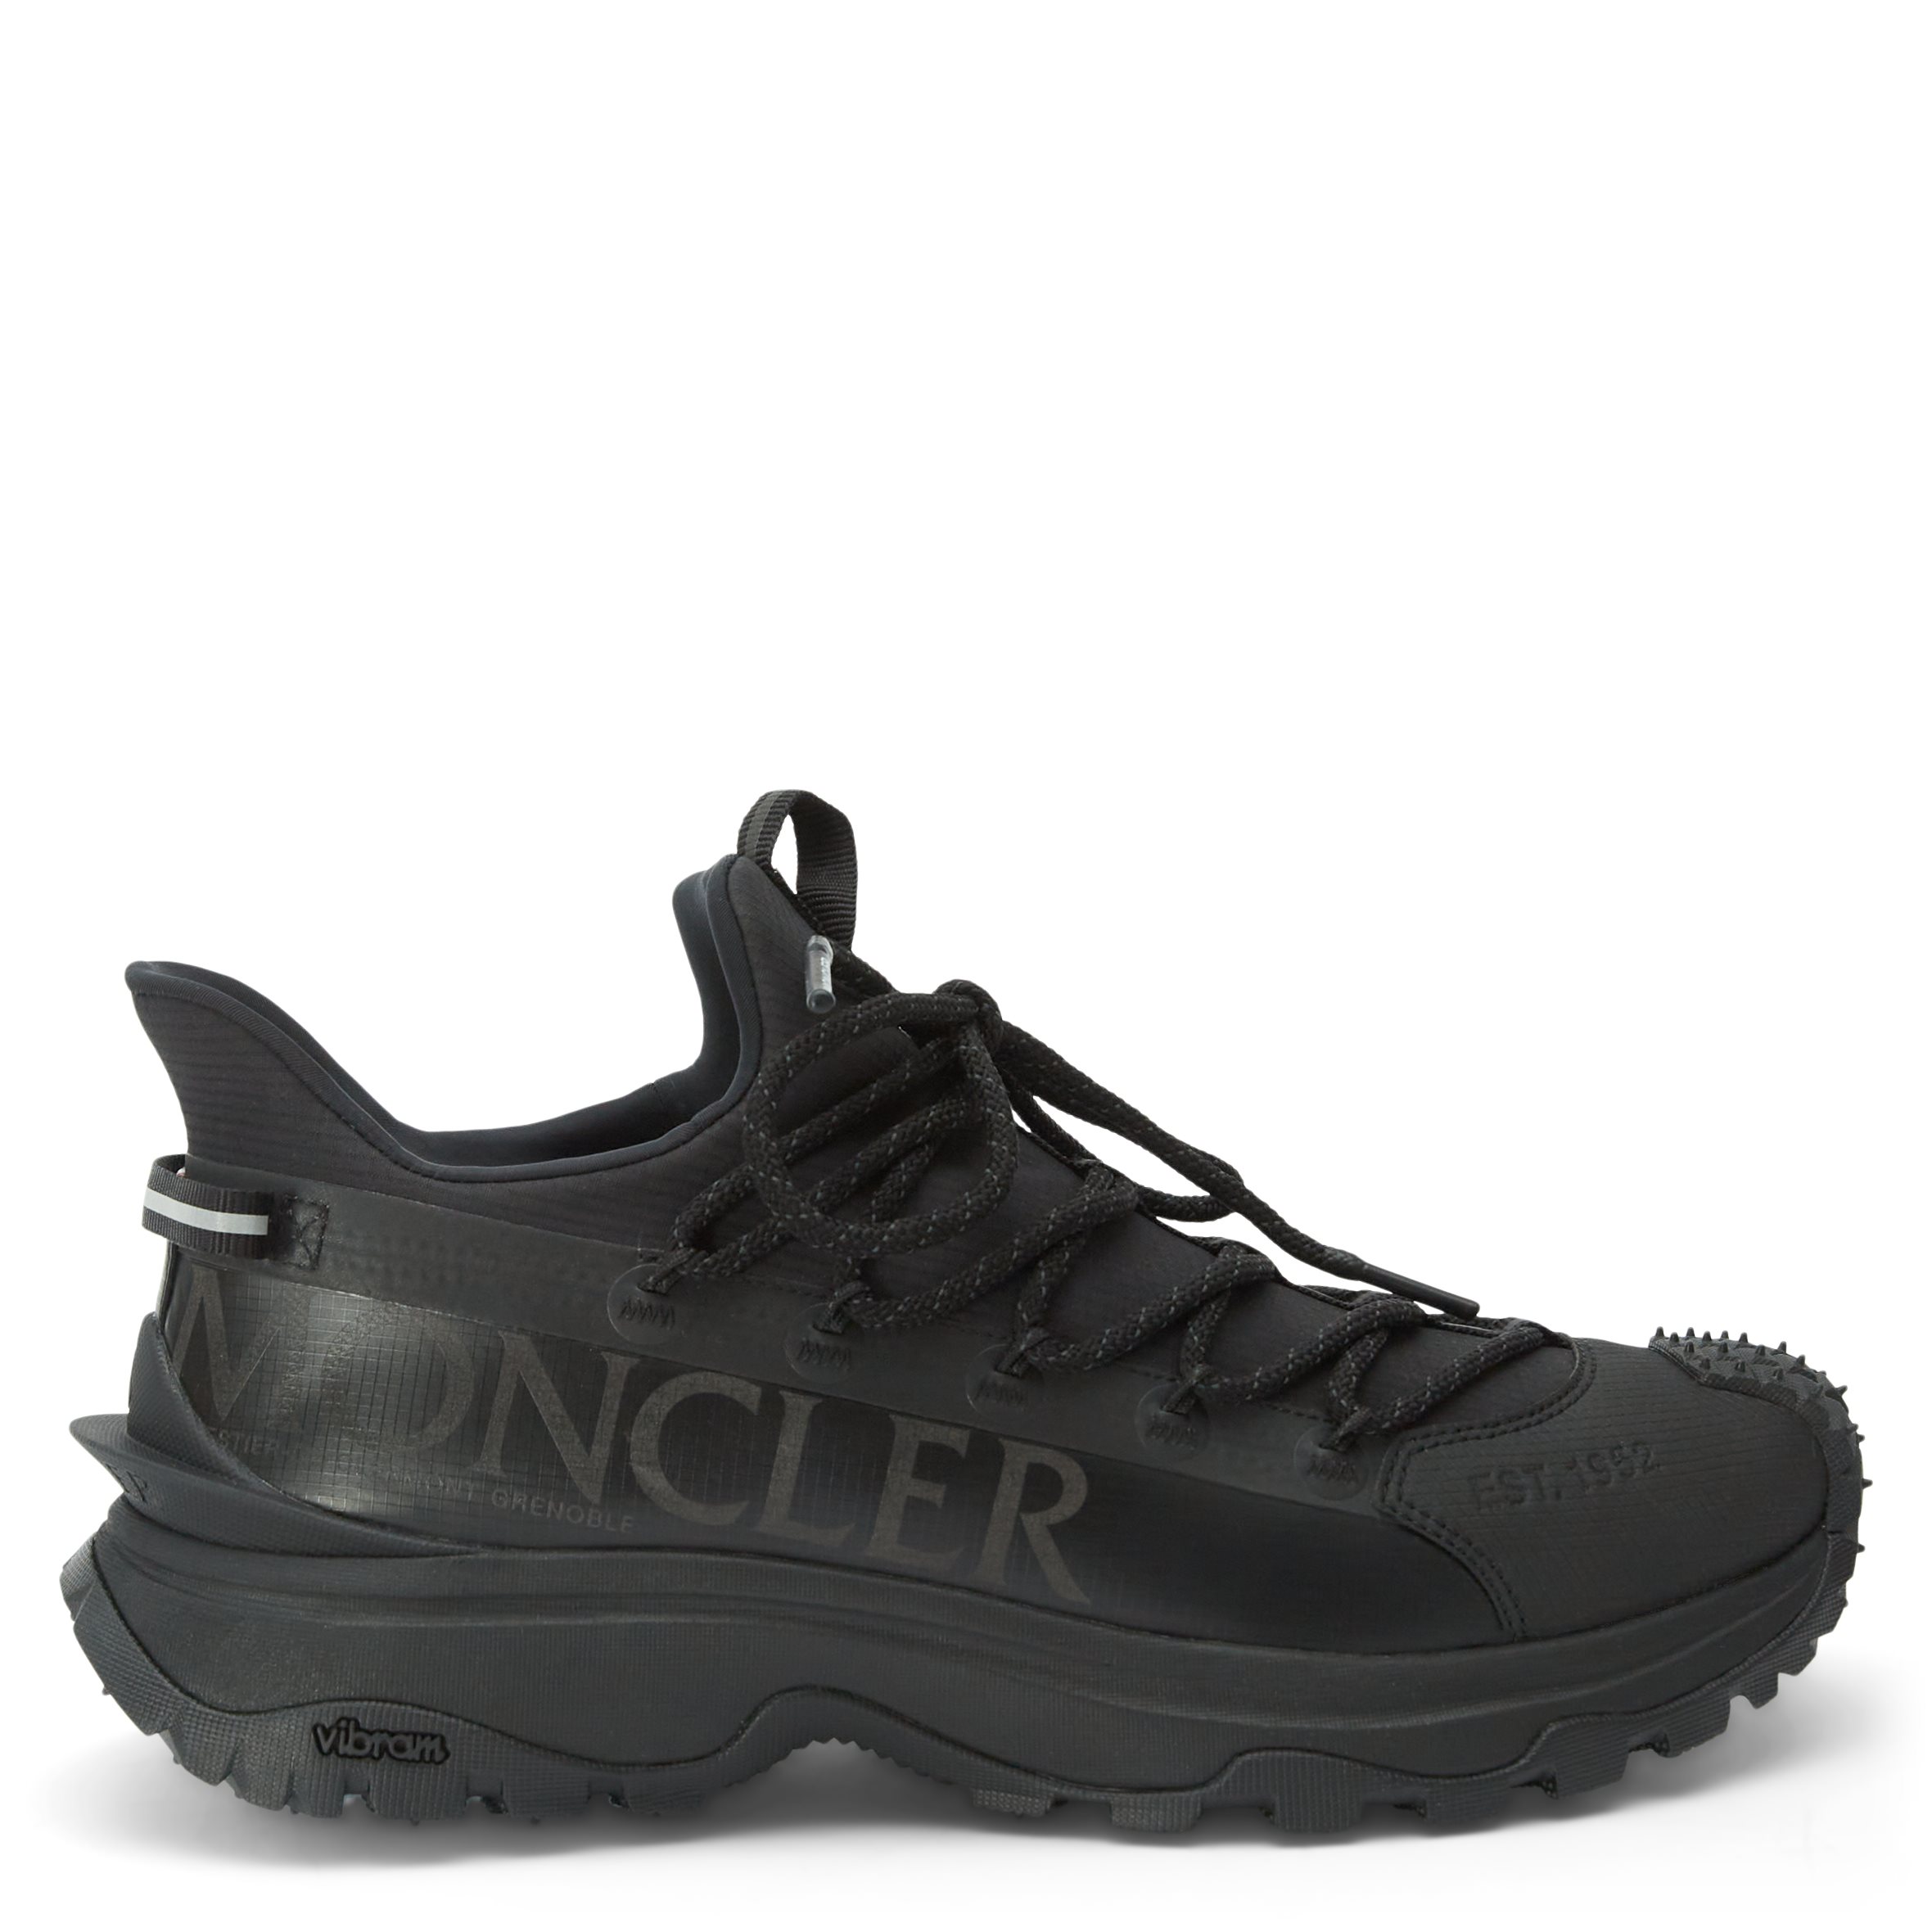 Moncler ACC Shoes TRAILGRIP LITE2 LOW 4M00240 Black